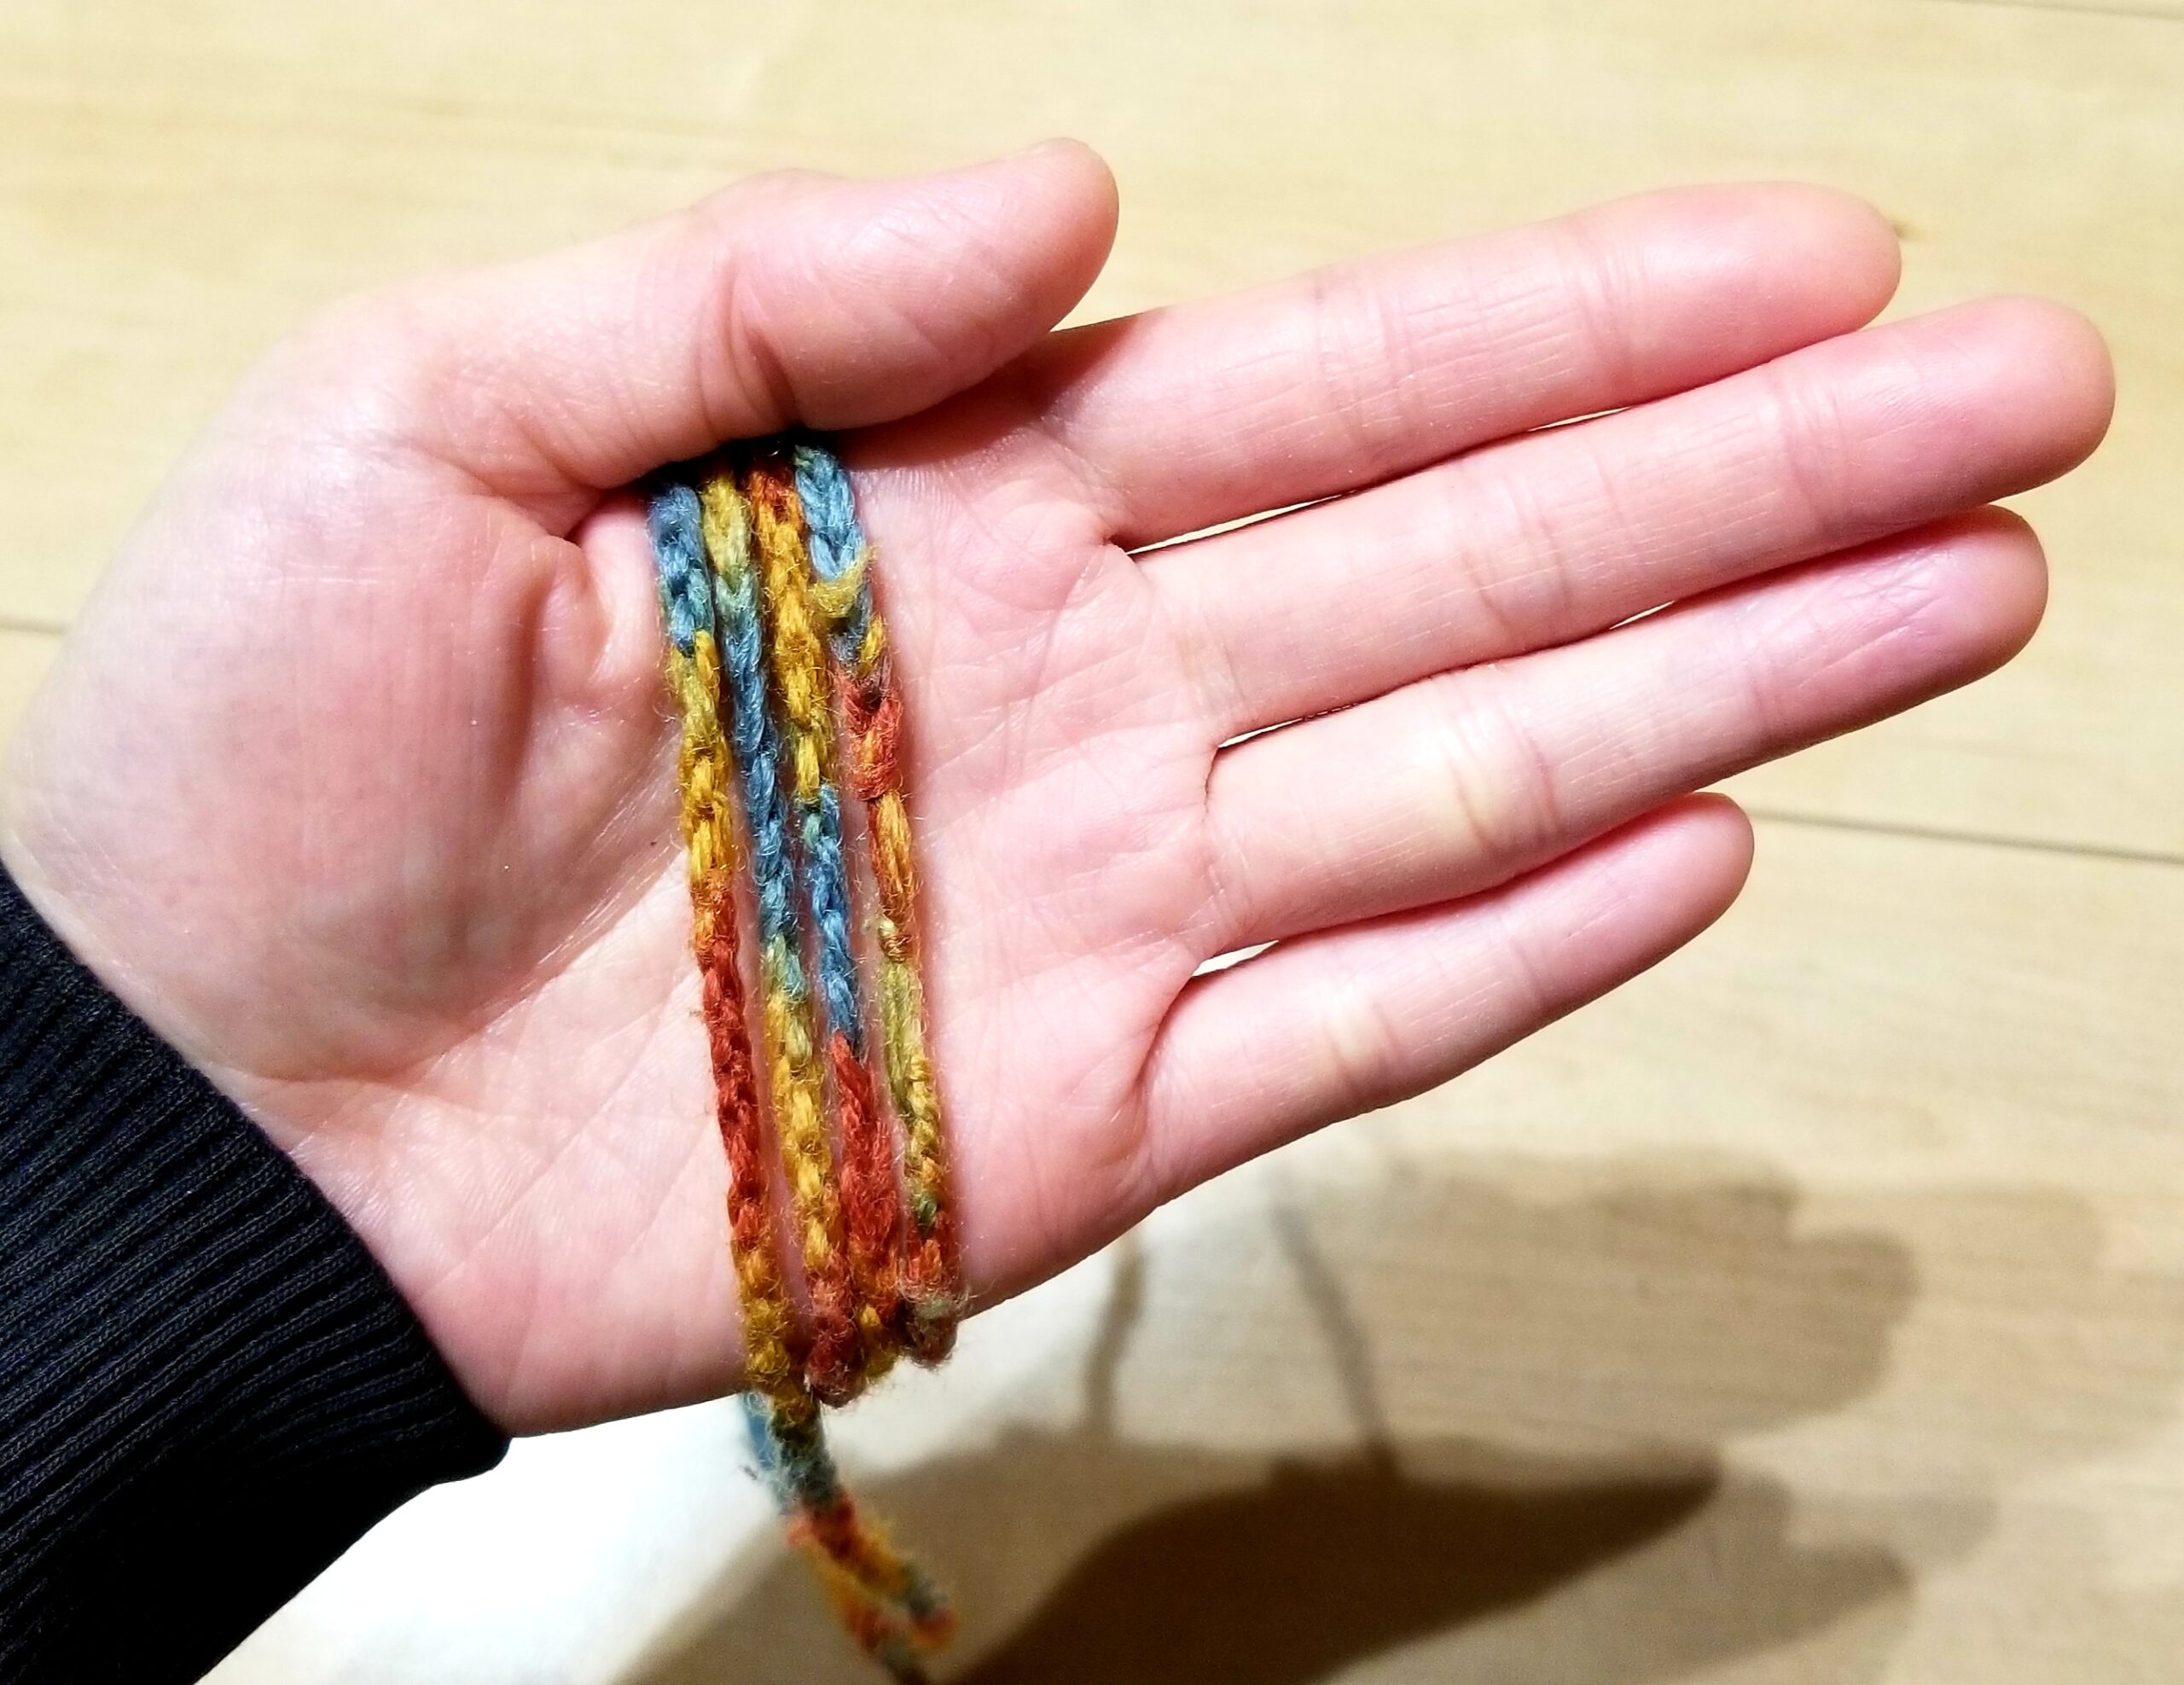 あやとり紐の作り方 指編みで簡単に結び目の目立たないあやとり紐を作ろう 三児ママの楽しい子育てdiy